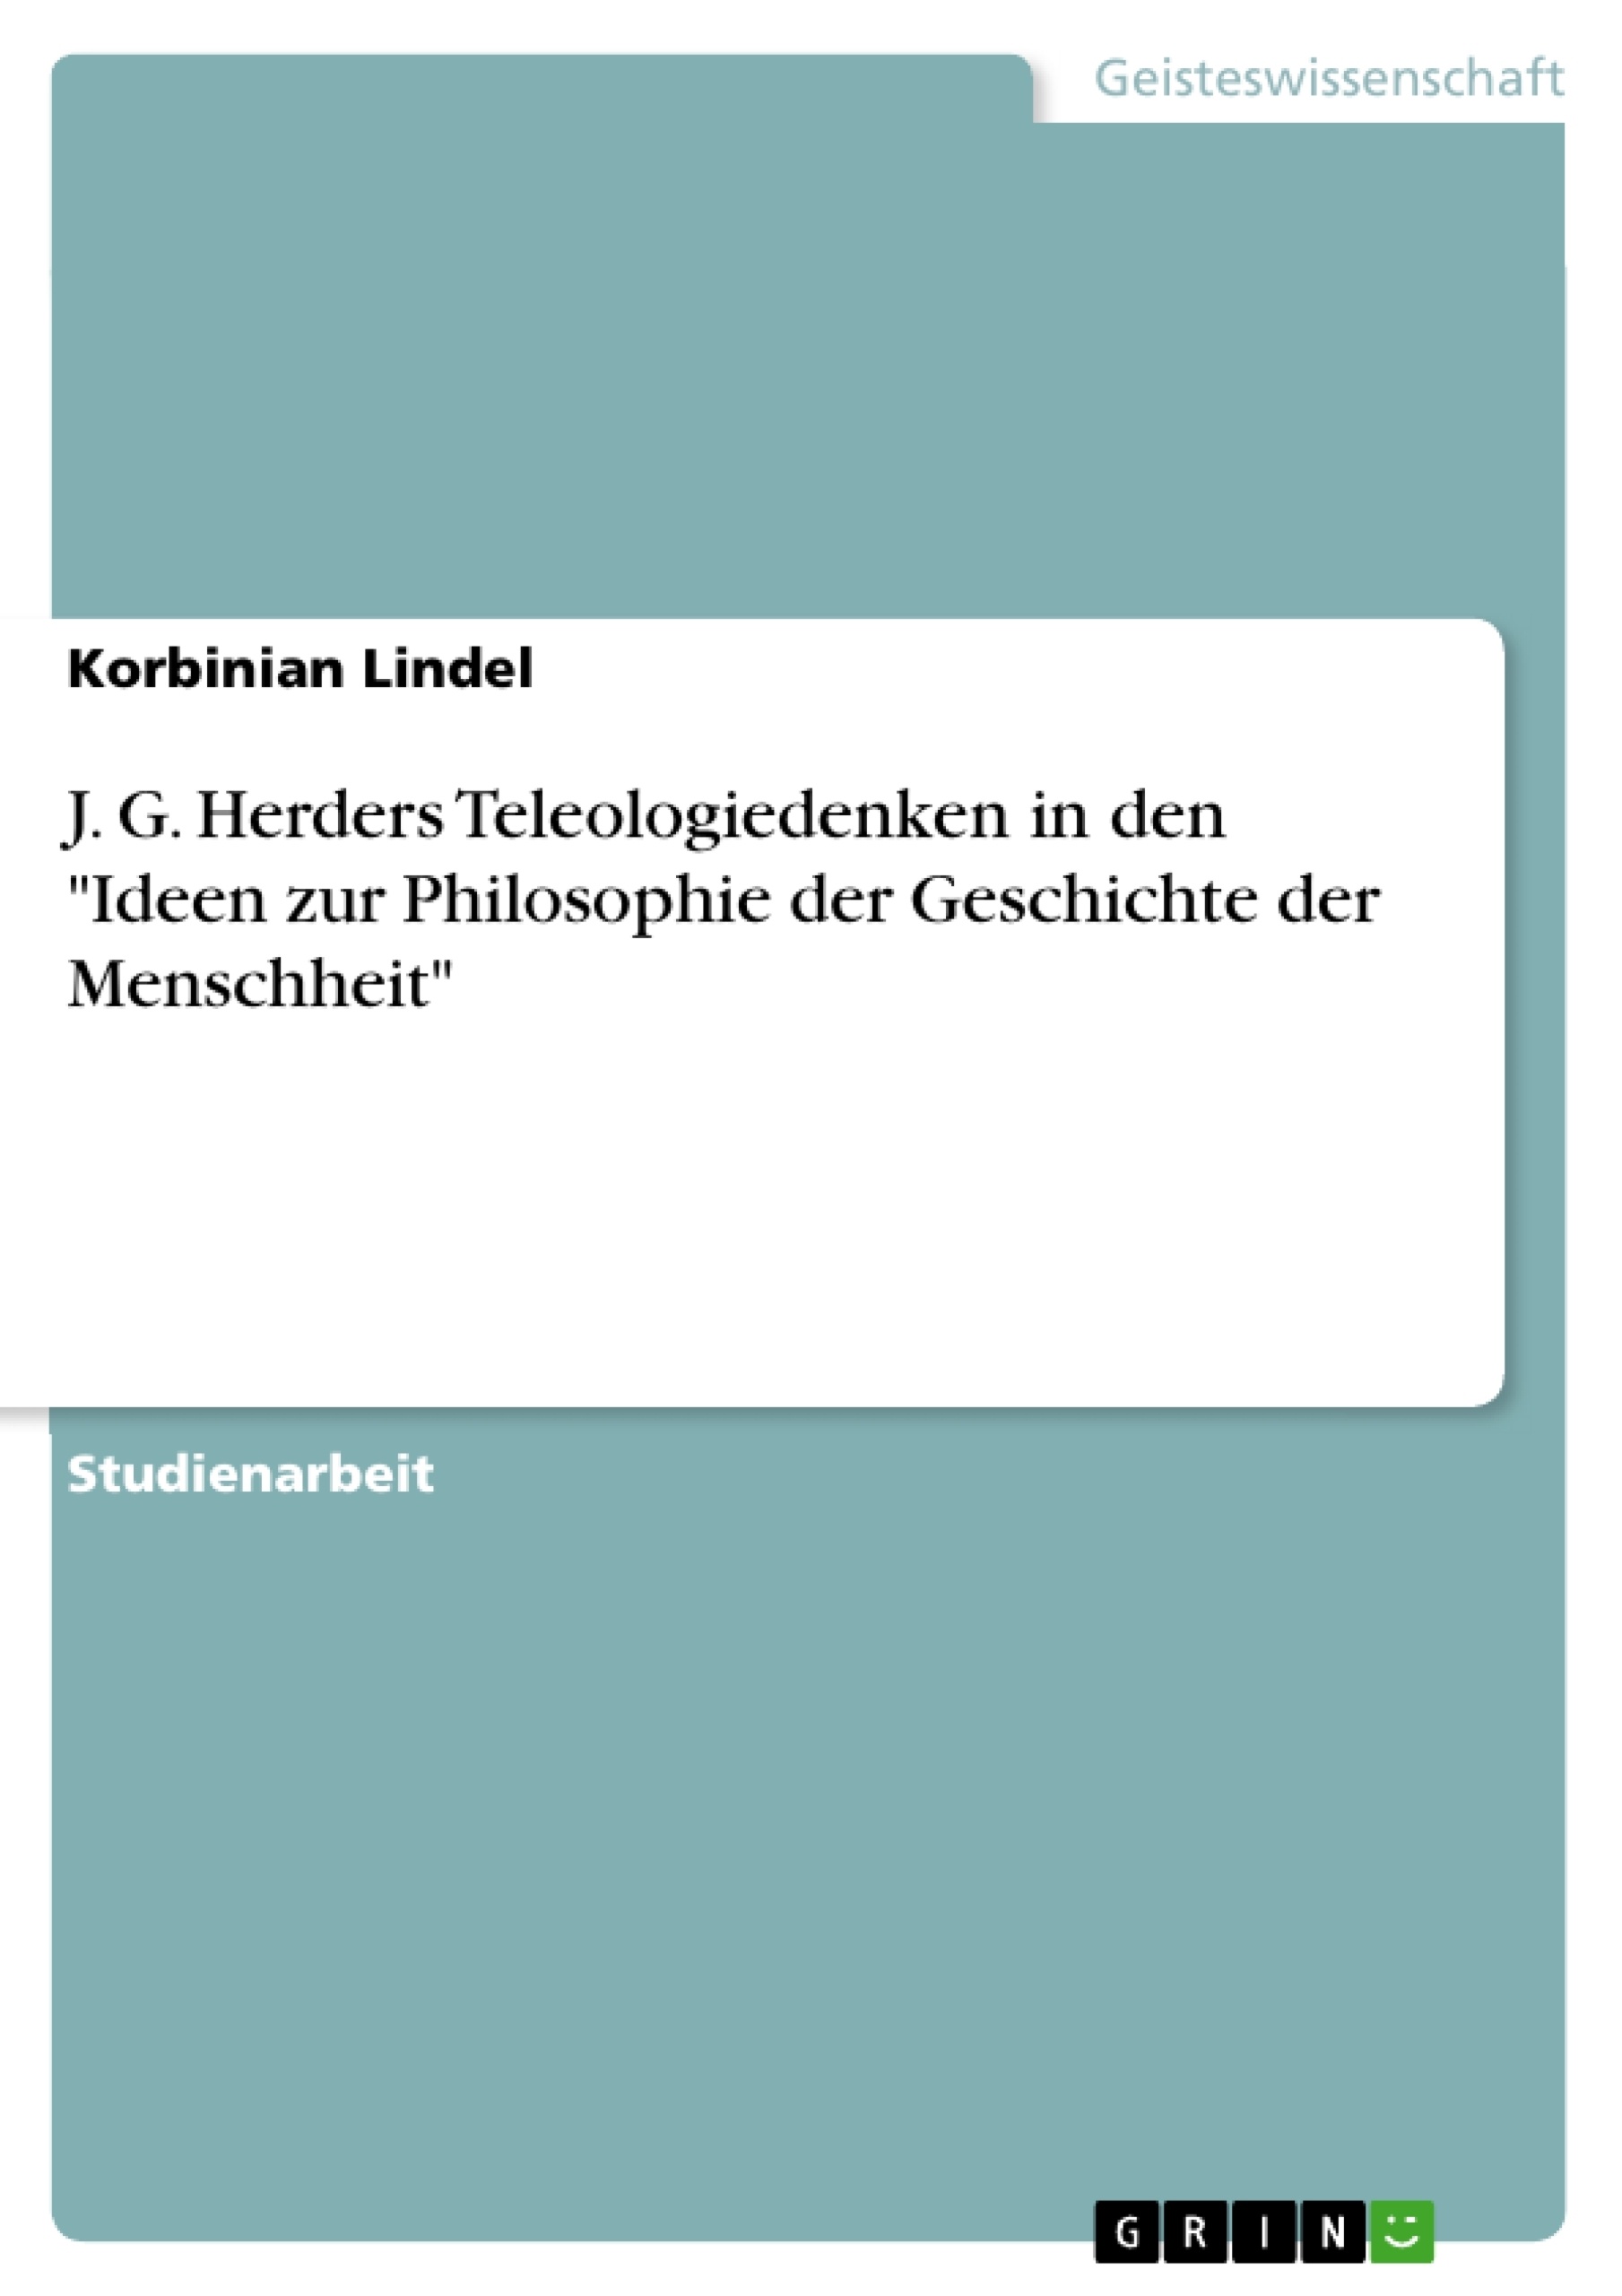 Título: J. G. Herders Teleologiedenken in den "Ideen zur Philosophie der Geschichte der Menschheit"